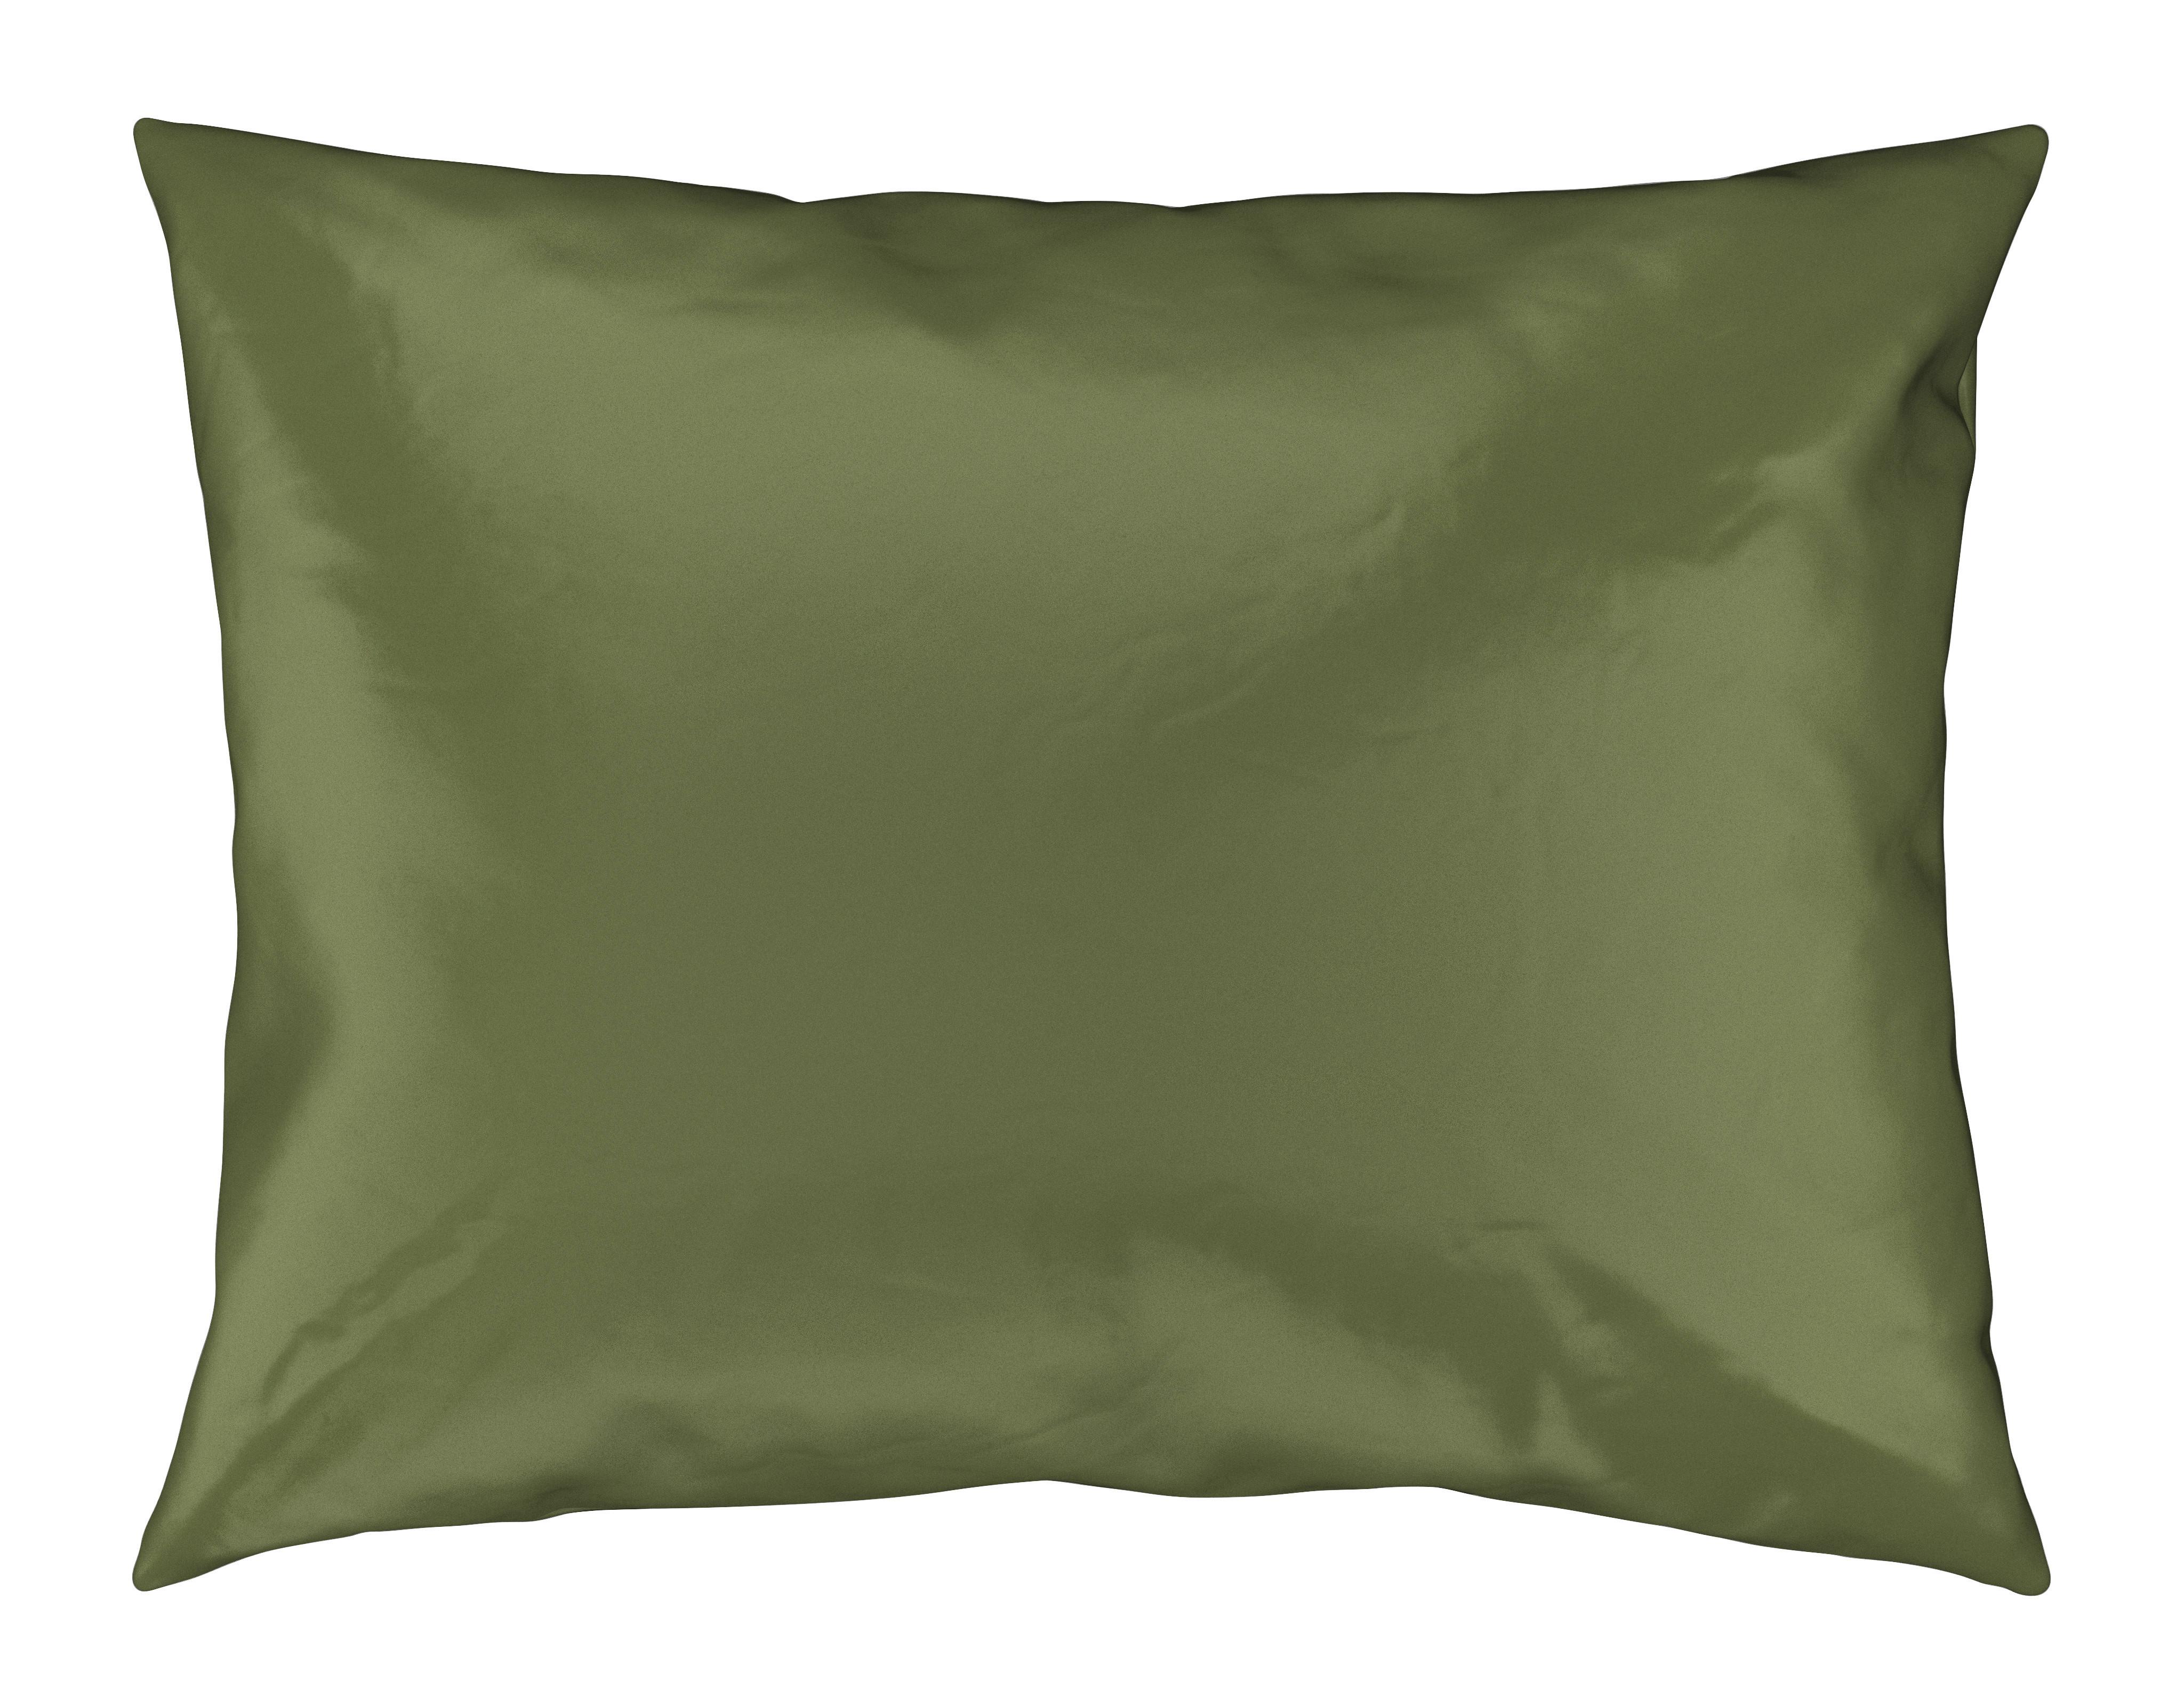 Potah Na Polštář Alex Uni, 40/60cm, Oliv.zelená - olivově zelená, Moderní, textil (40/60cm) - Premium Living